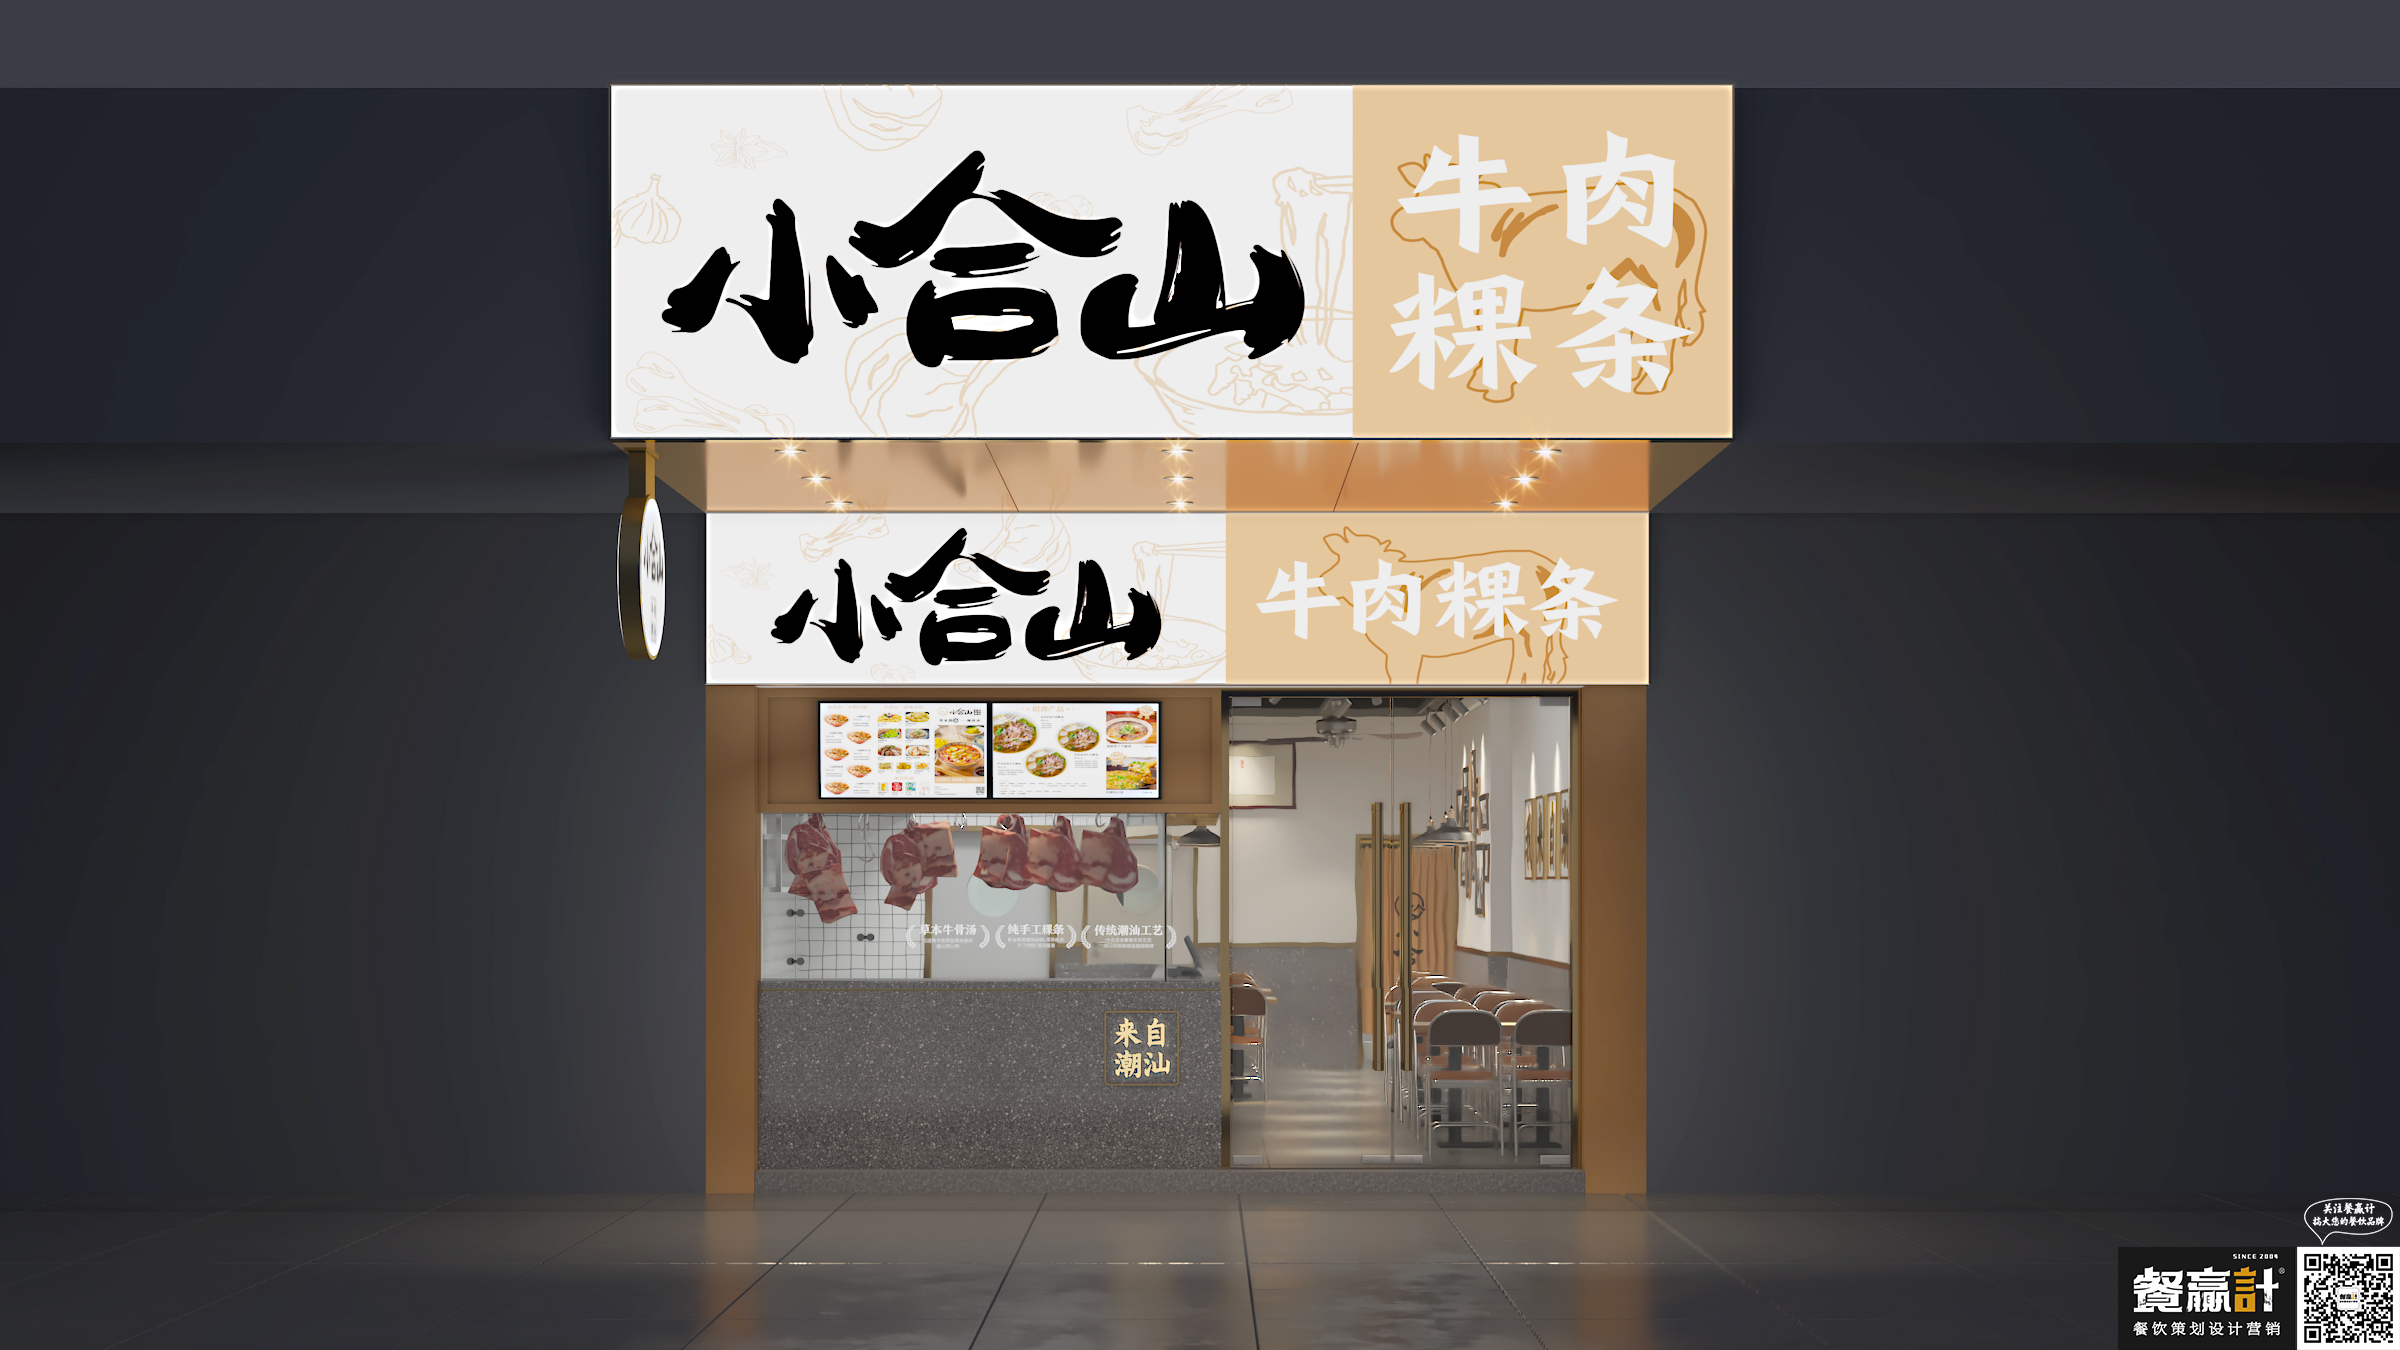 客家菜小合山——牛肉粿条餐厅空间设计